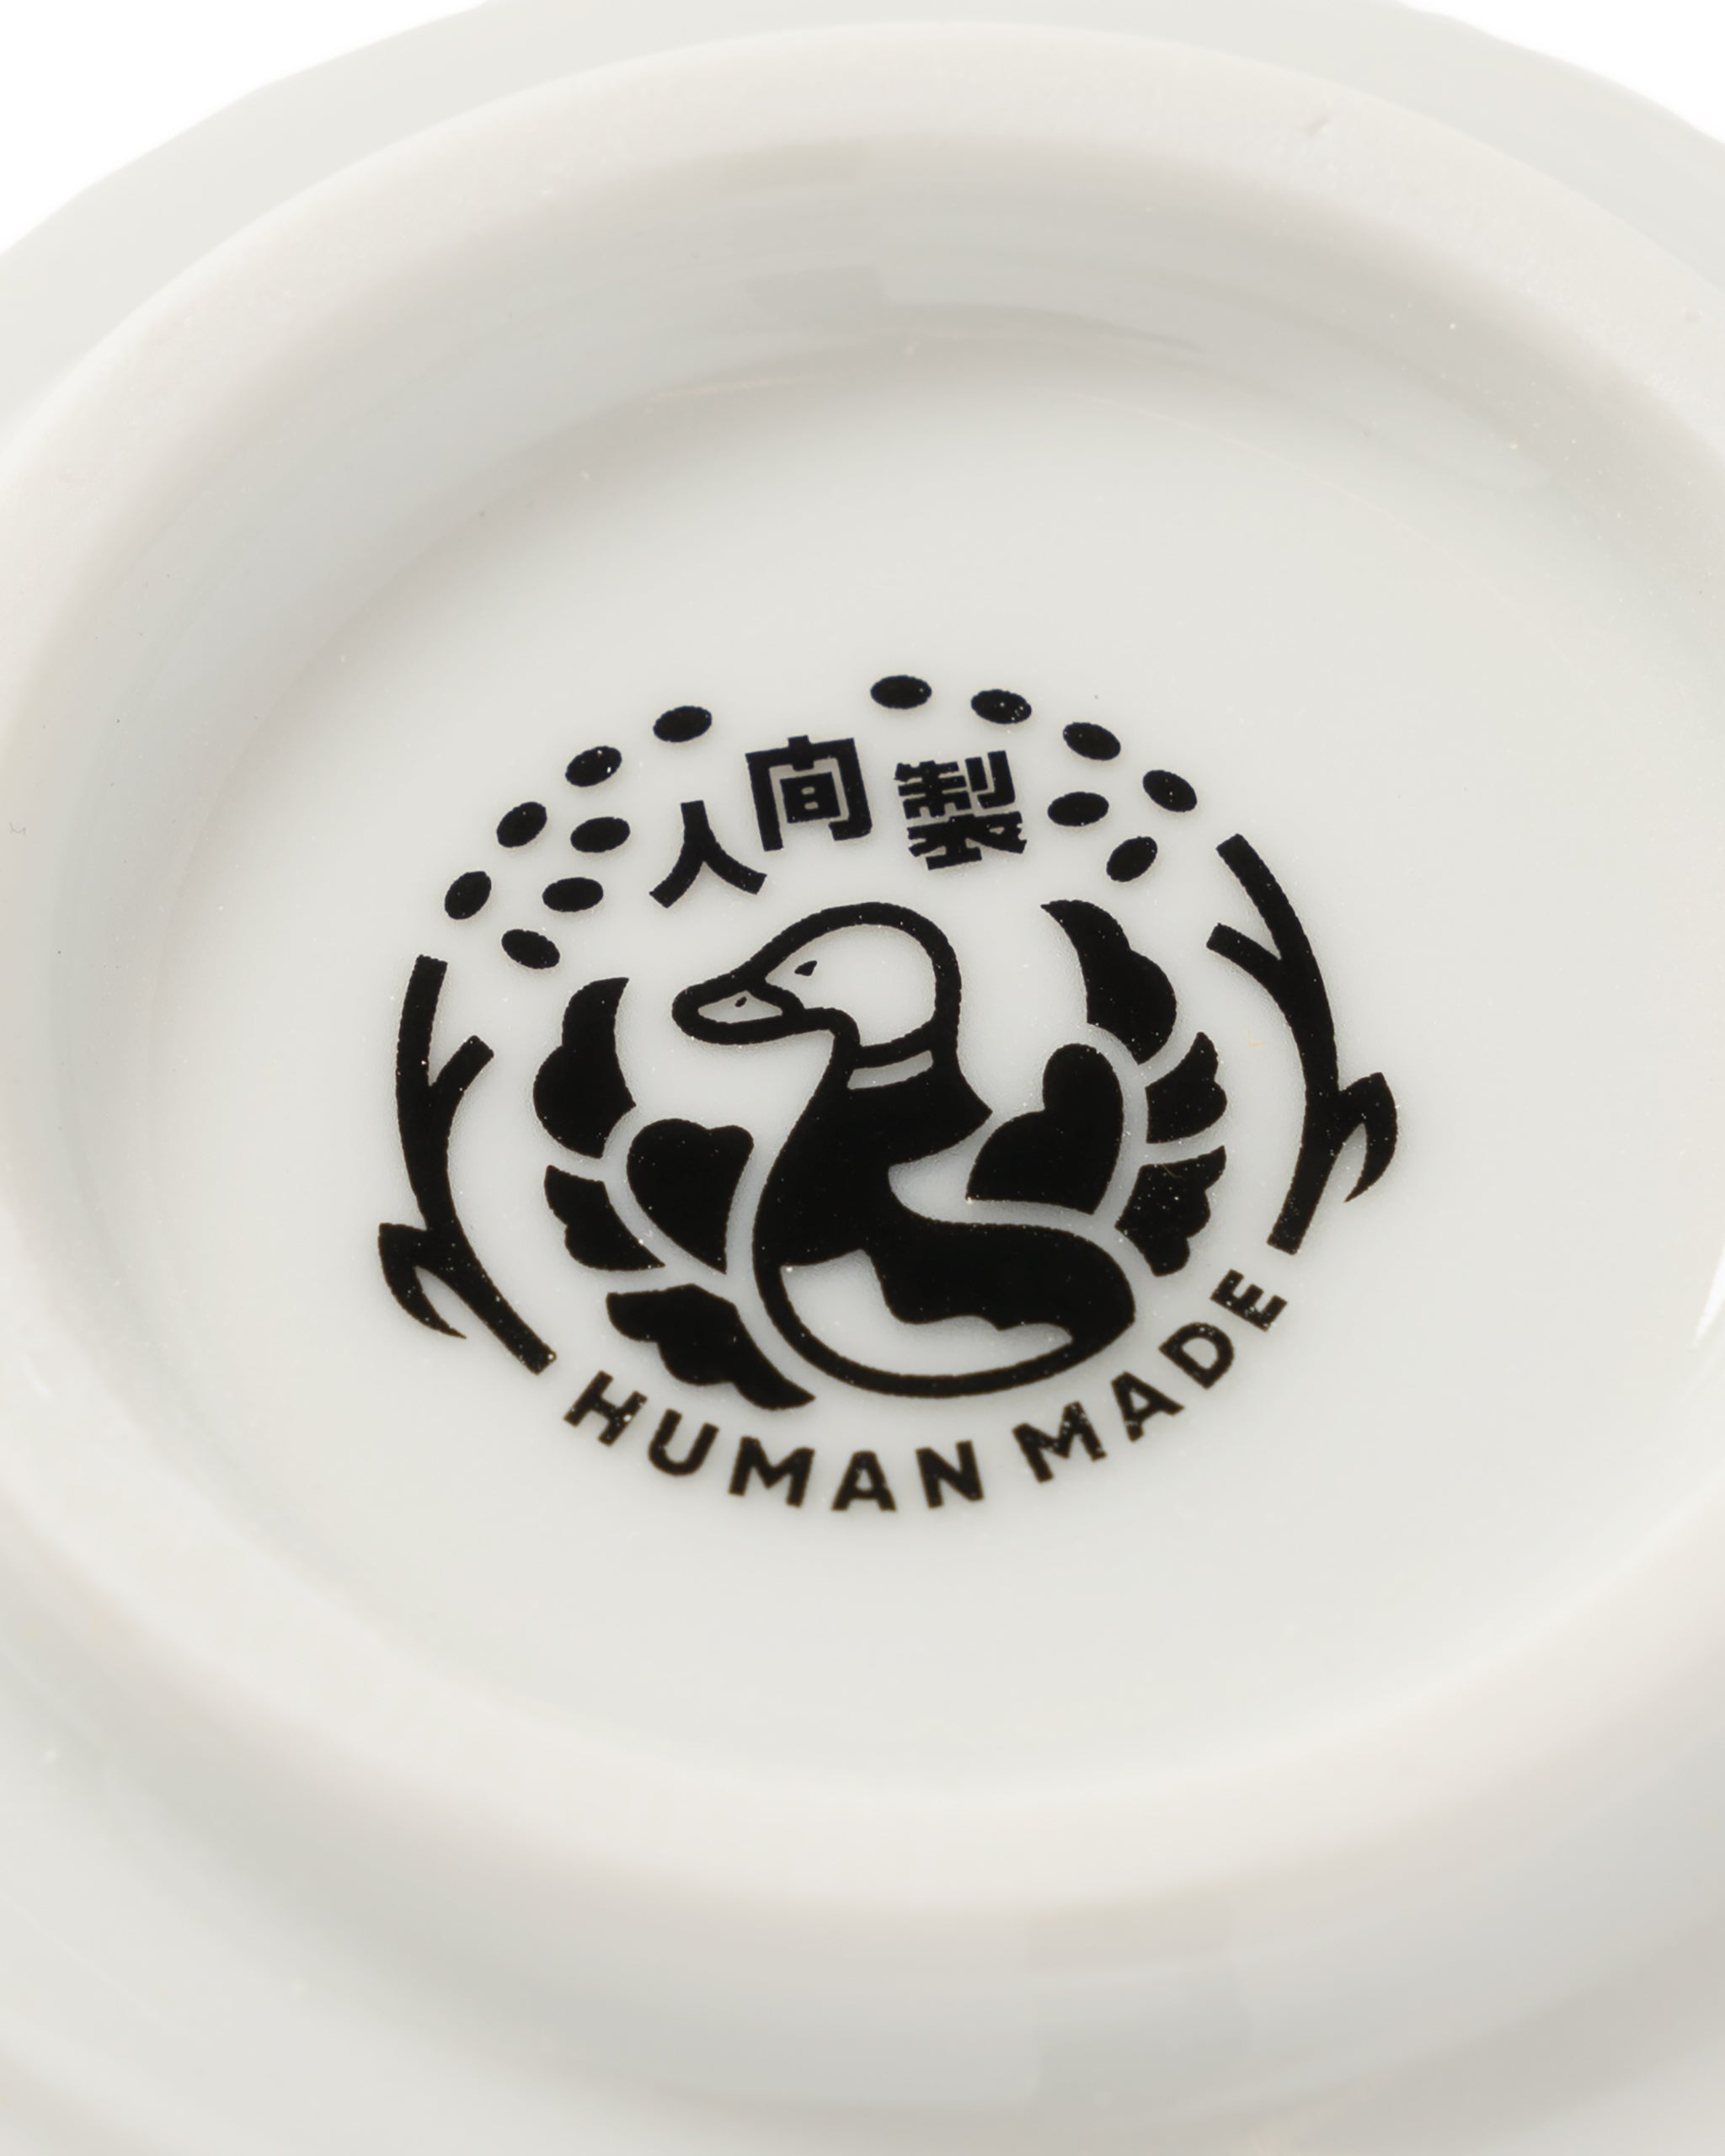 ■限定■HUMAN MADE MATCHING TEA CUPS SET(2P)